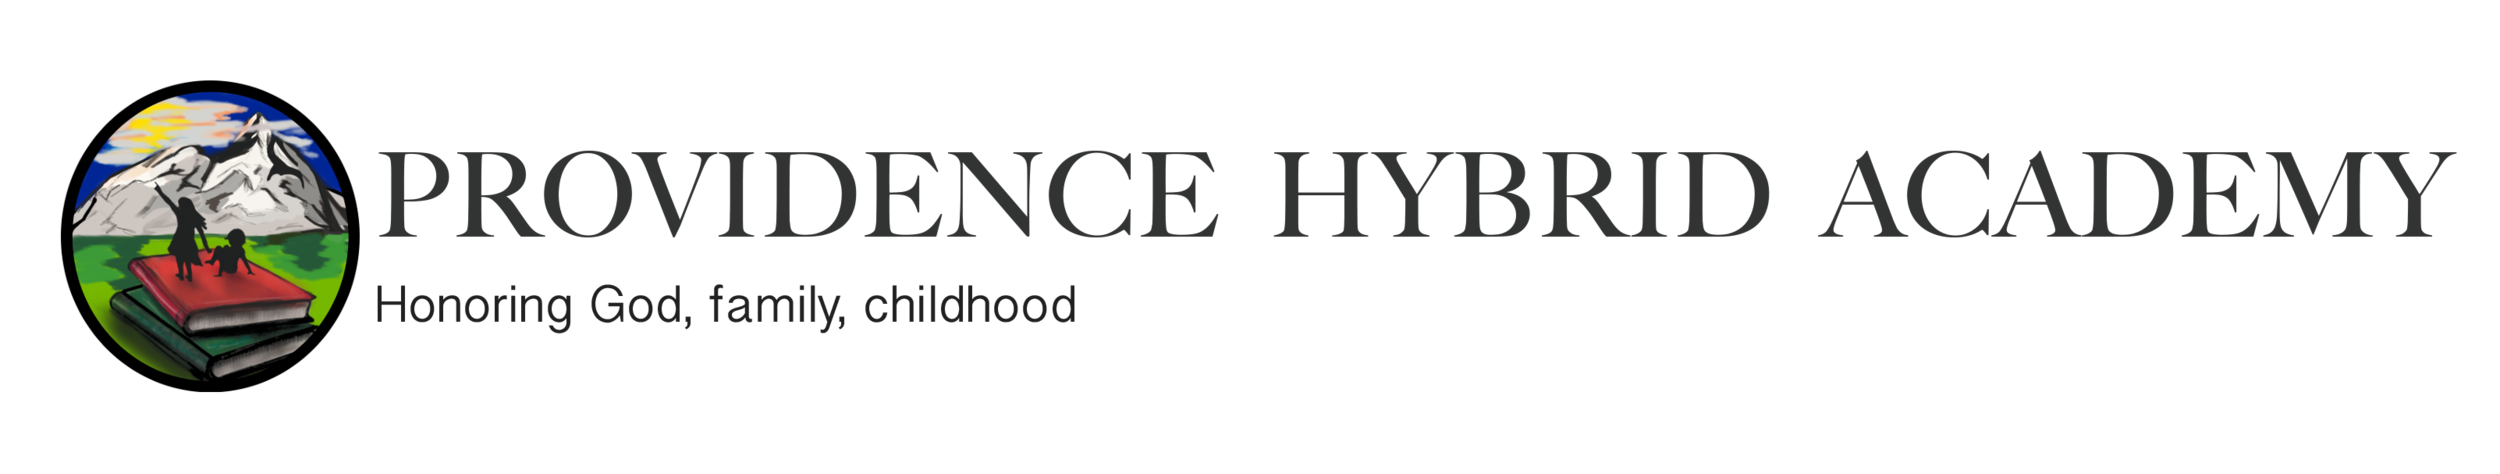 Providence Hybrid Academy